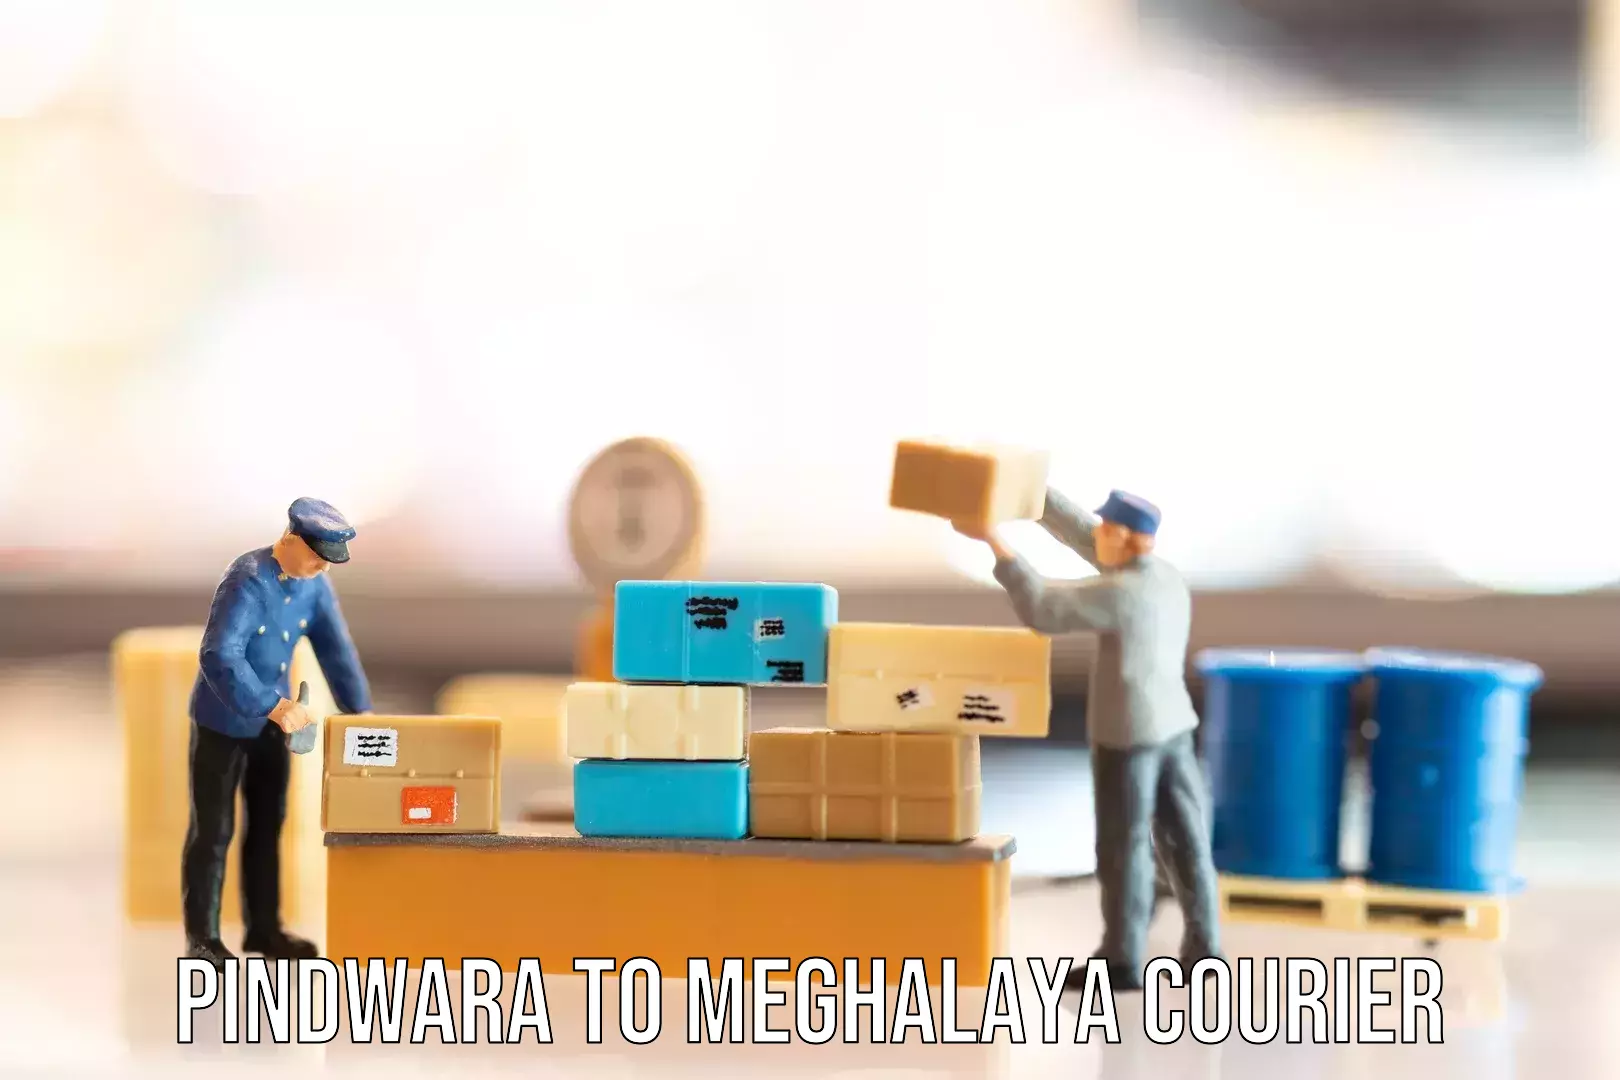 Baggage shipping service Pindwara to Meghalaya